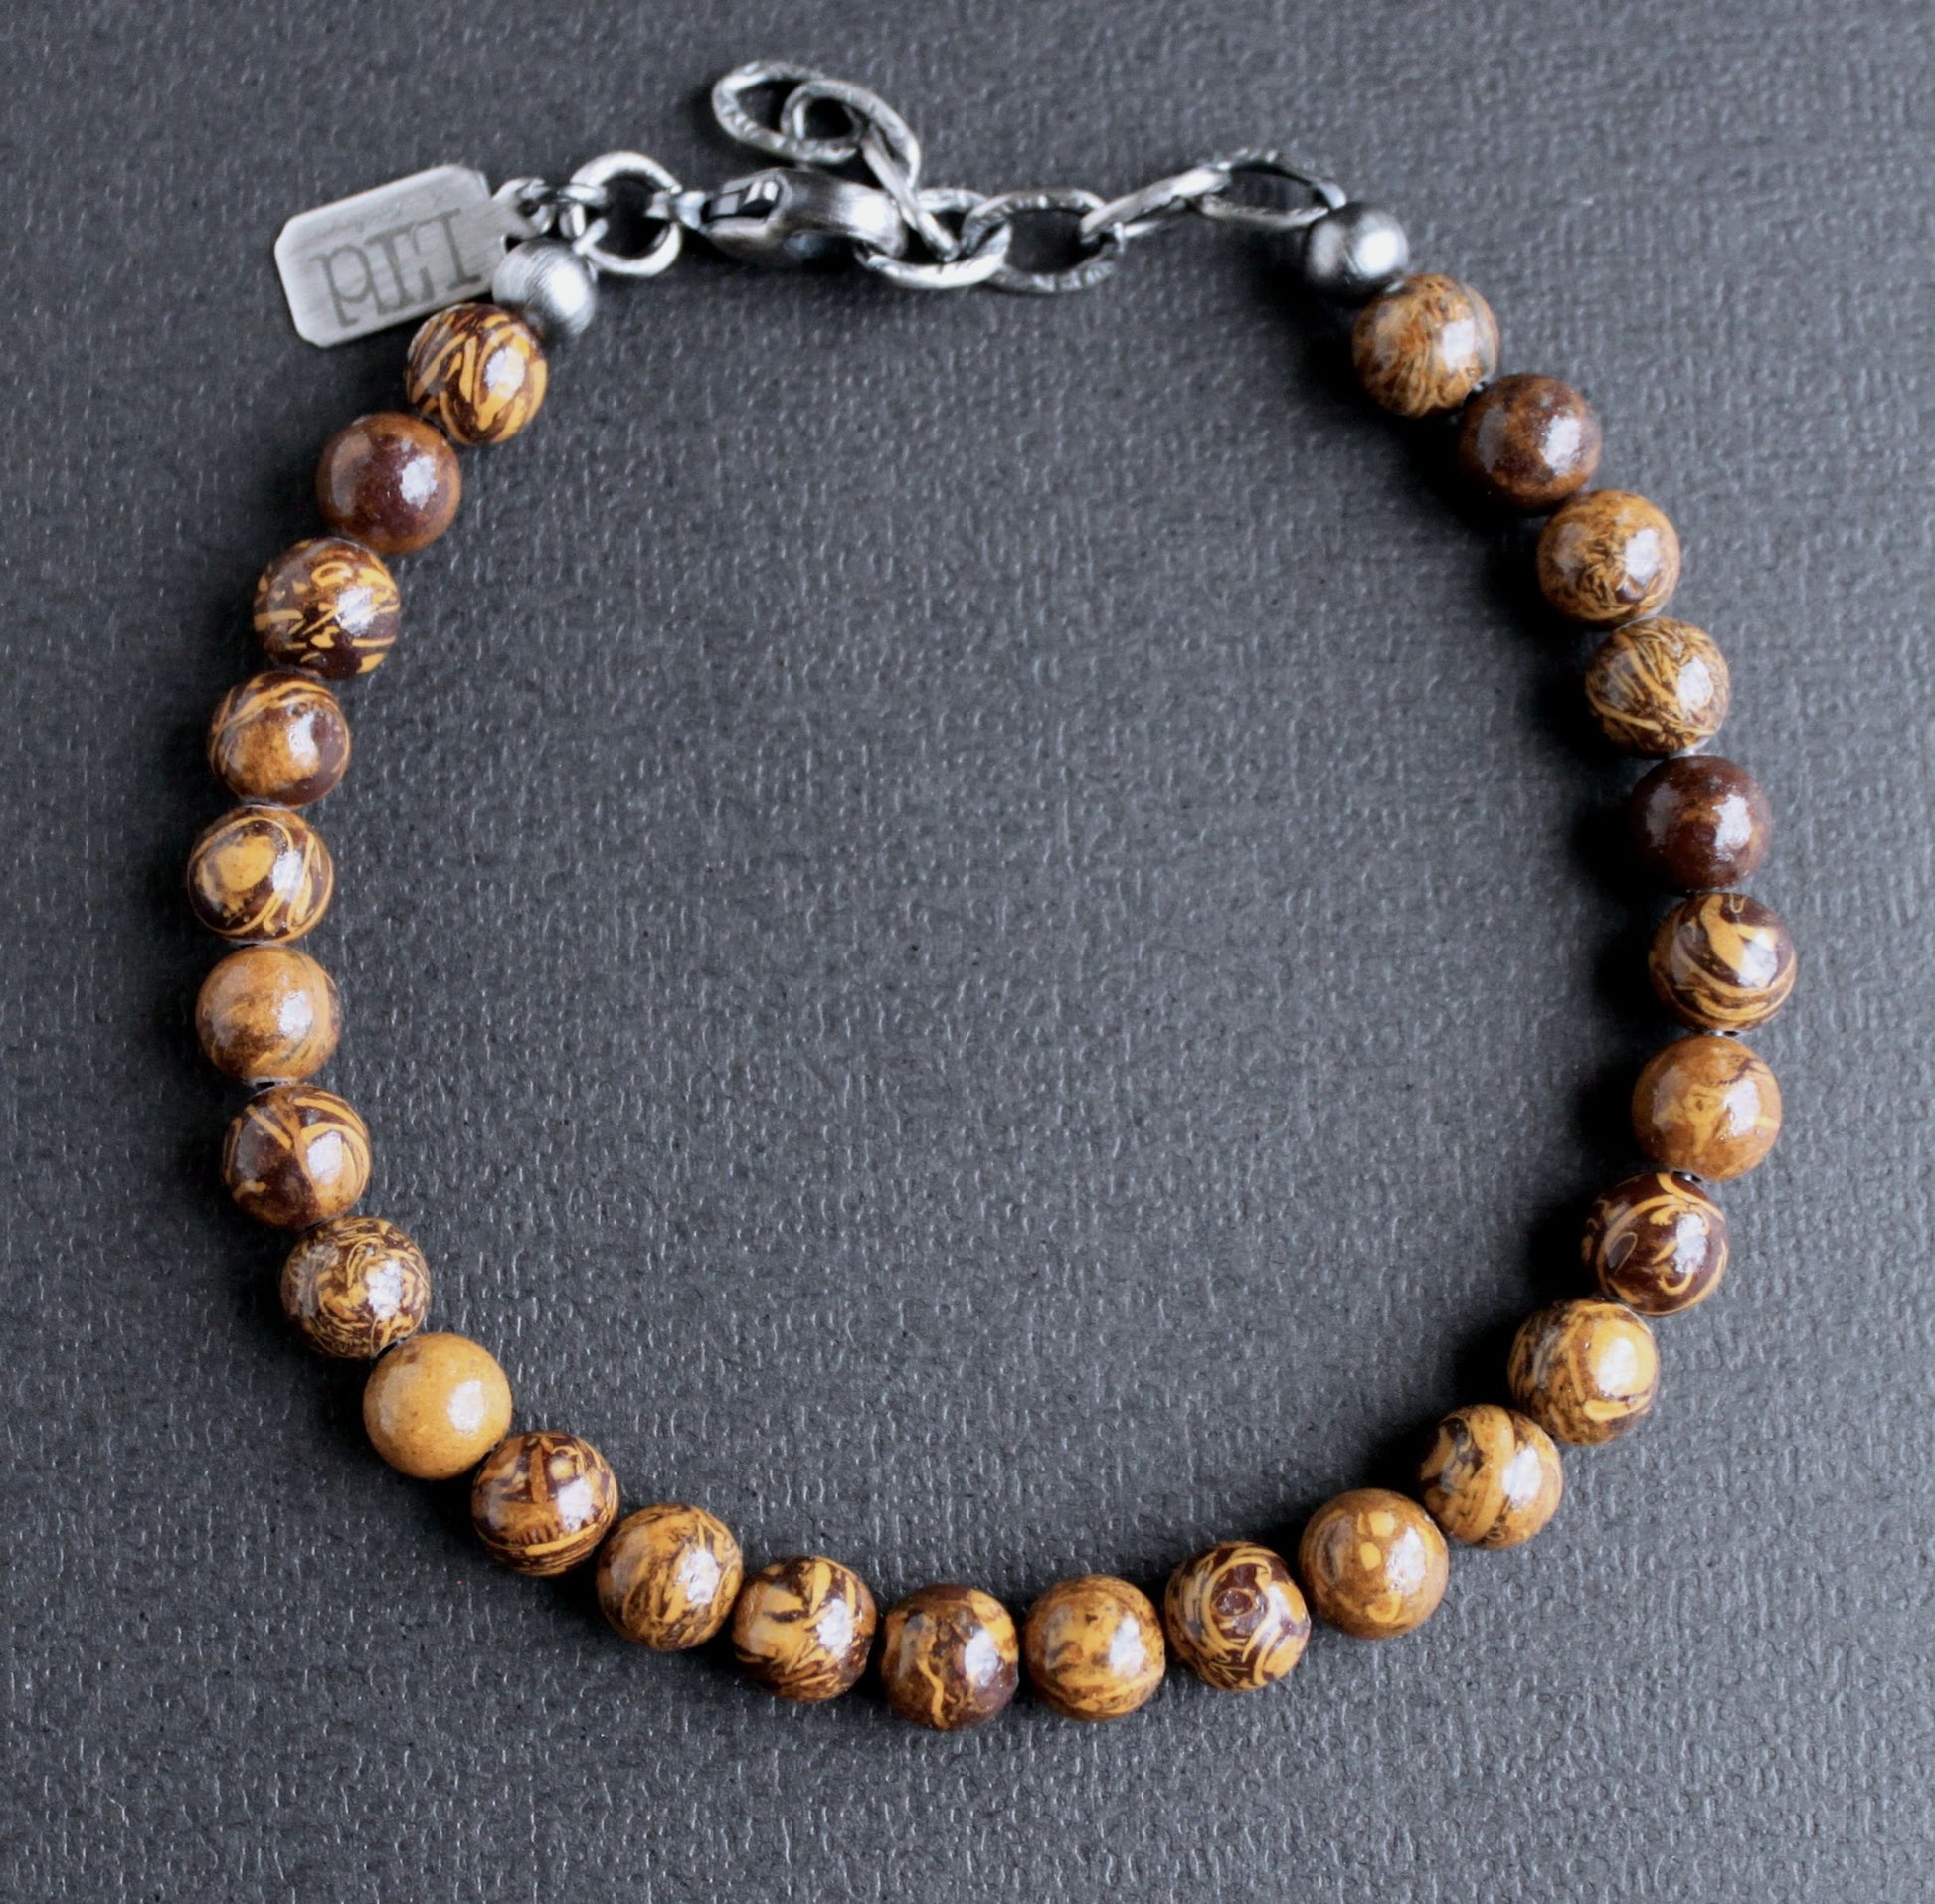 Men's 6mm adjustable bead bracelet